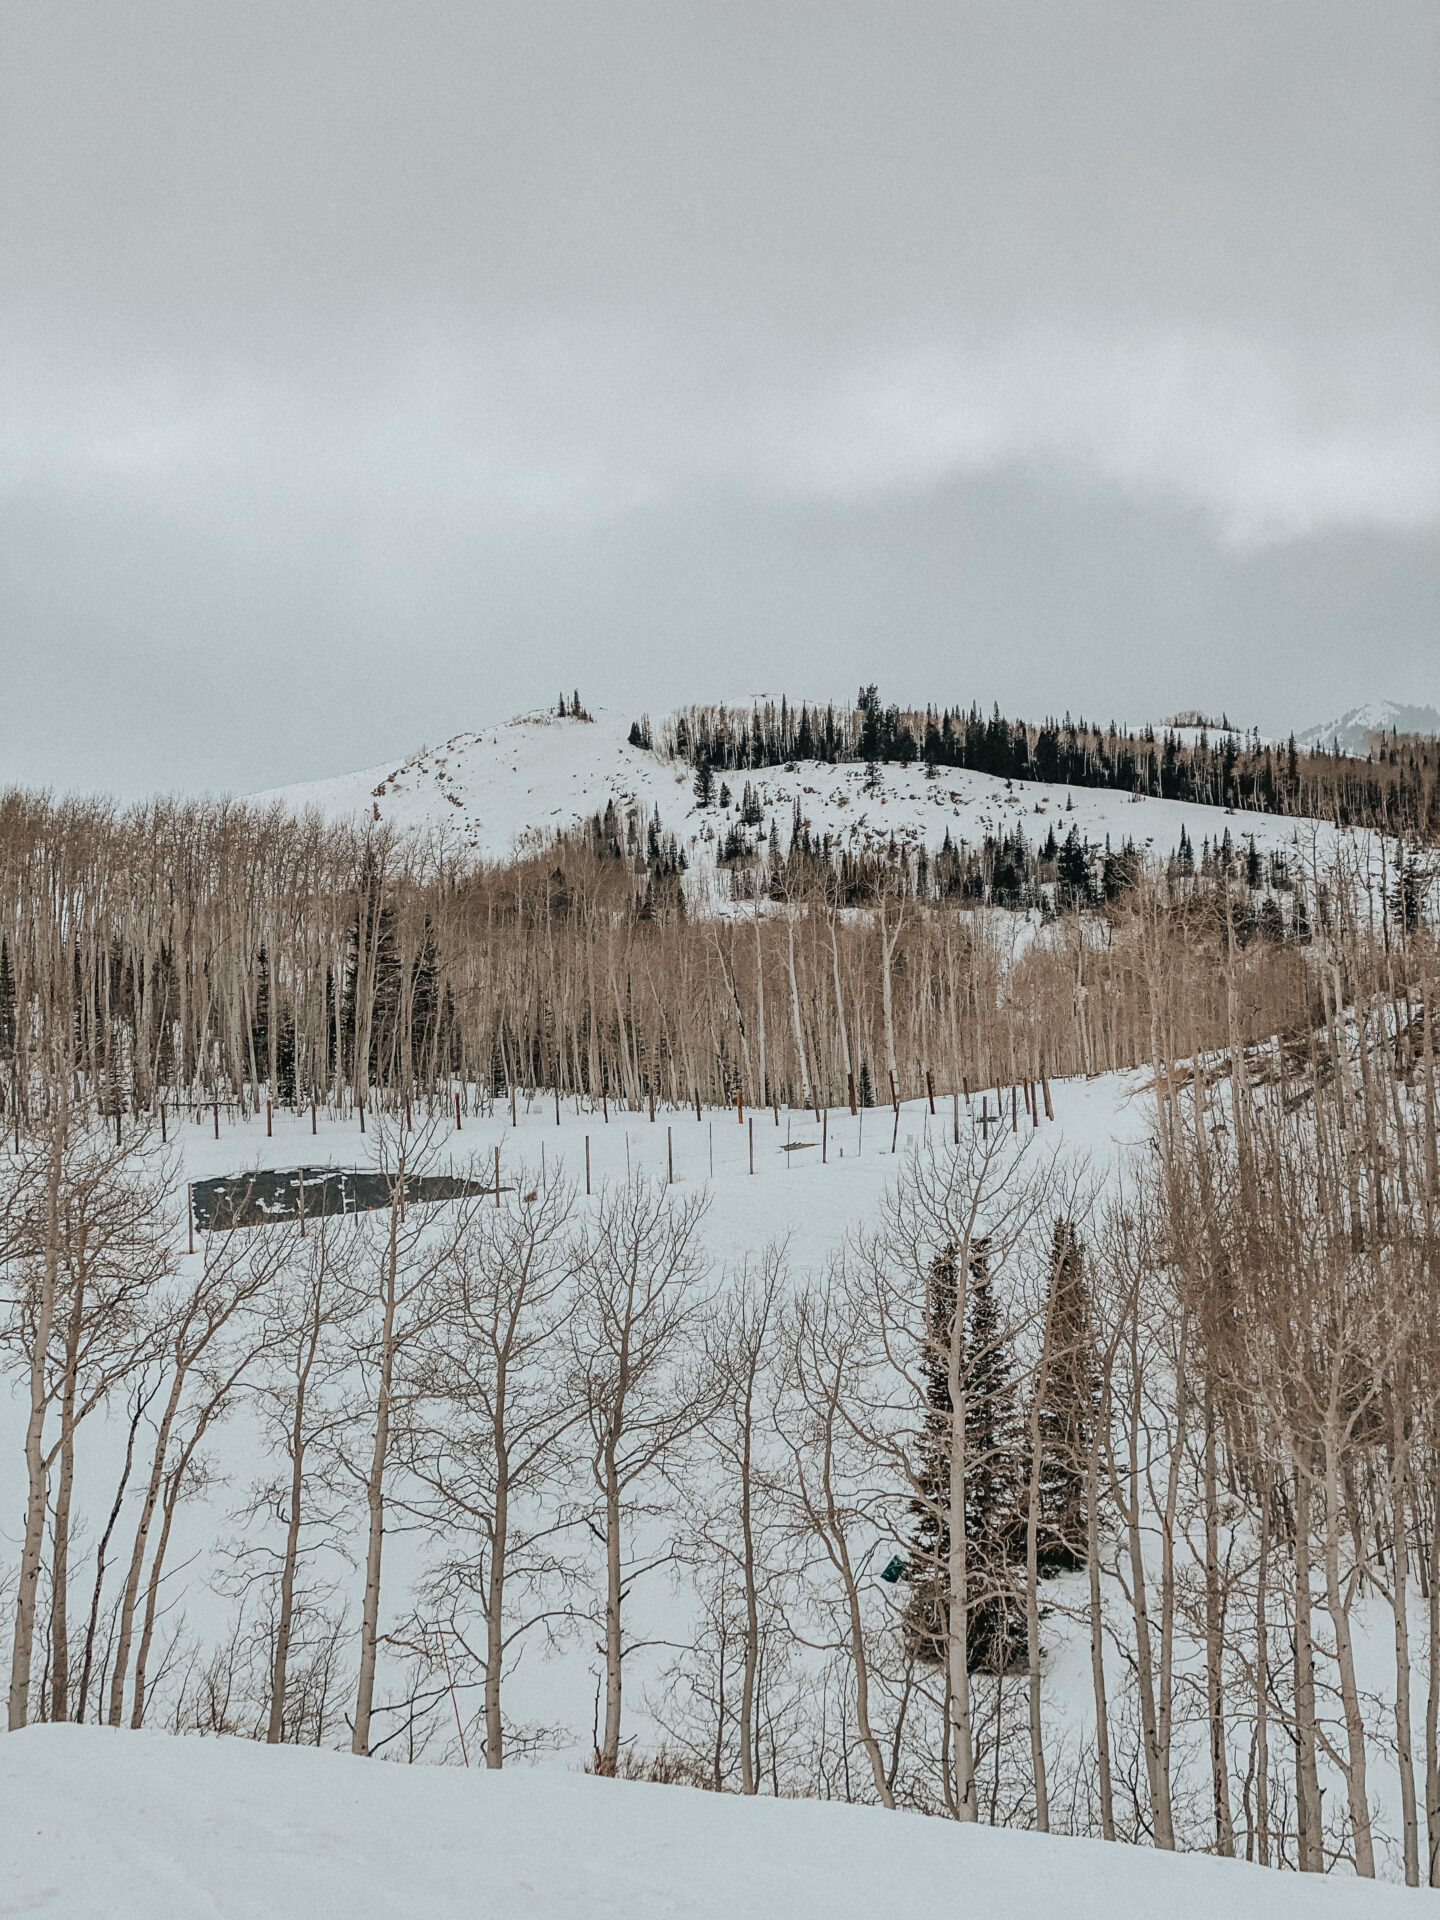 How to spend 1 week in Park City, Utah: Park City Travel Guide - Park City skiing, Deer Valley skiing